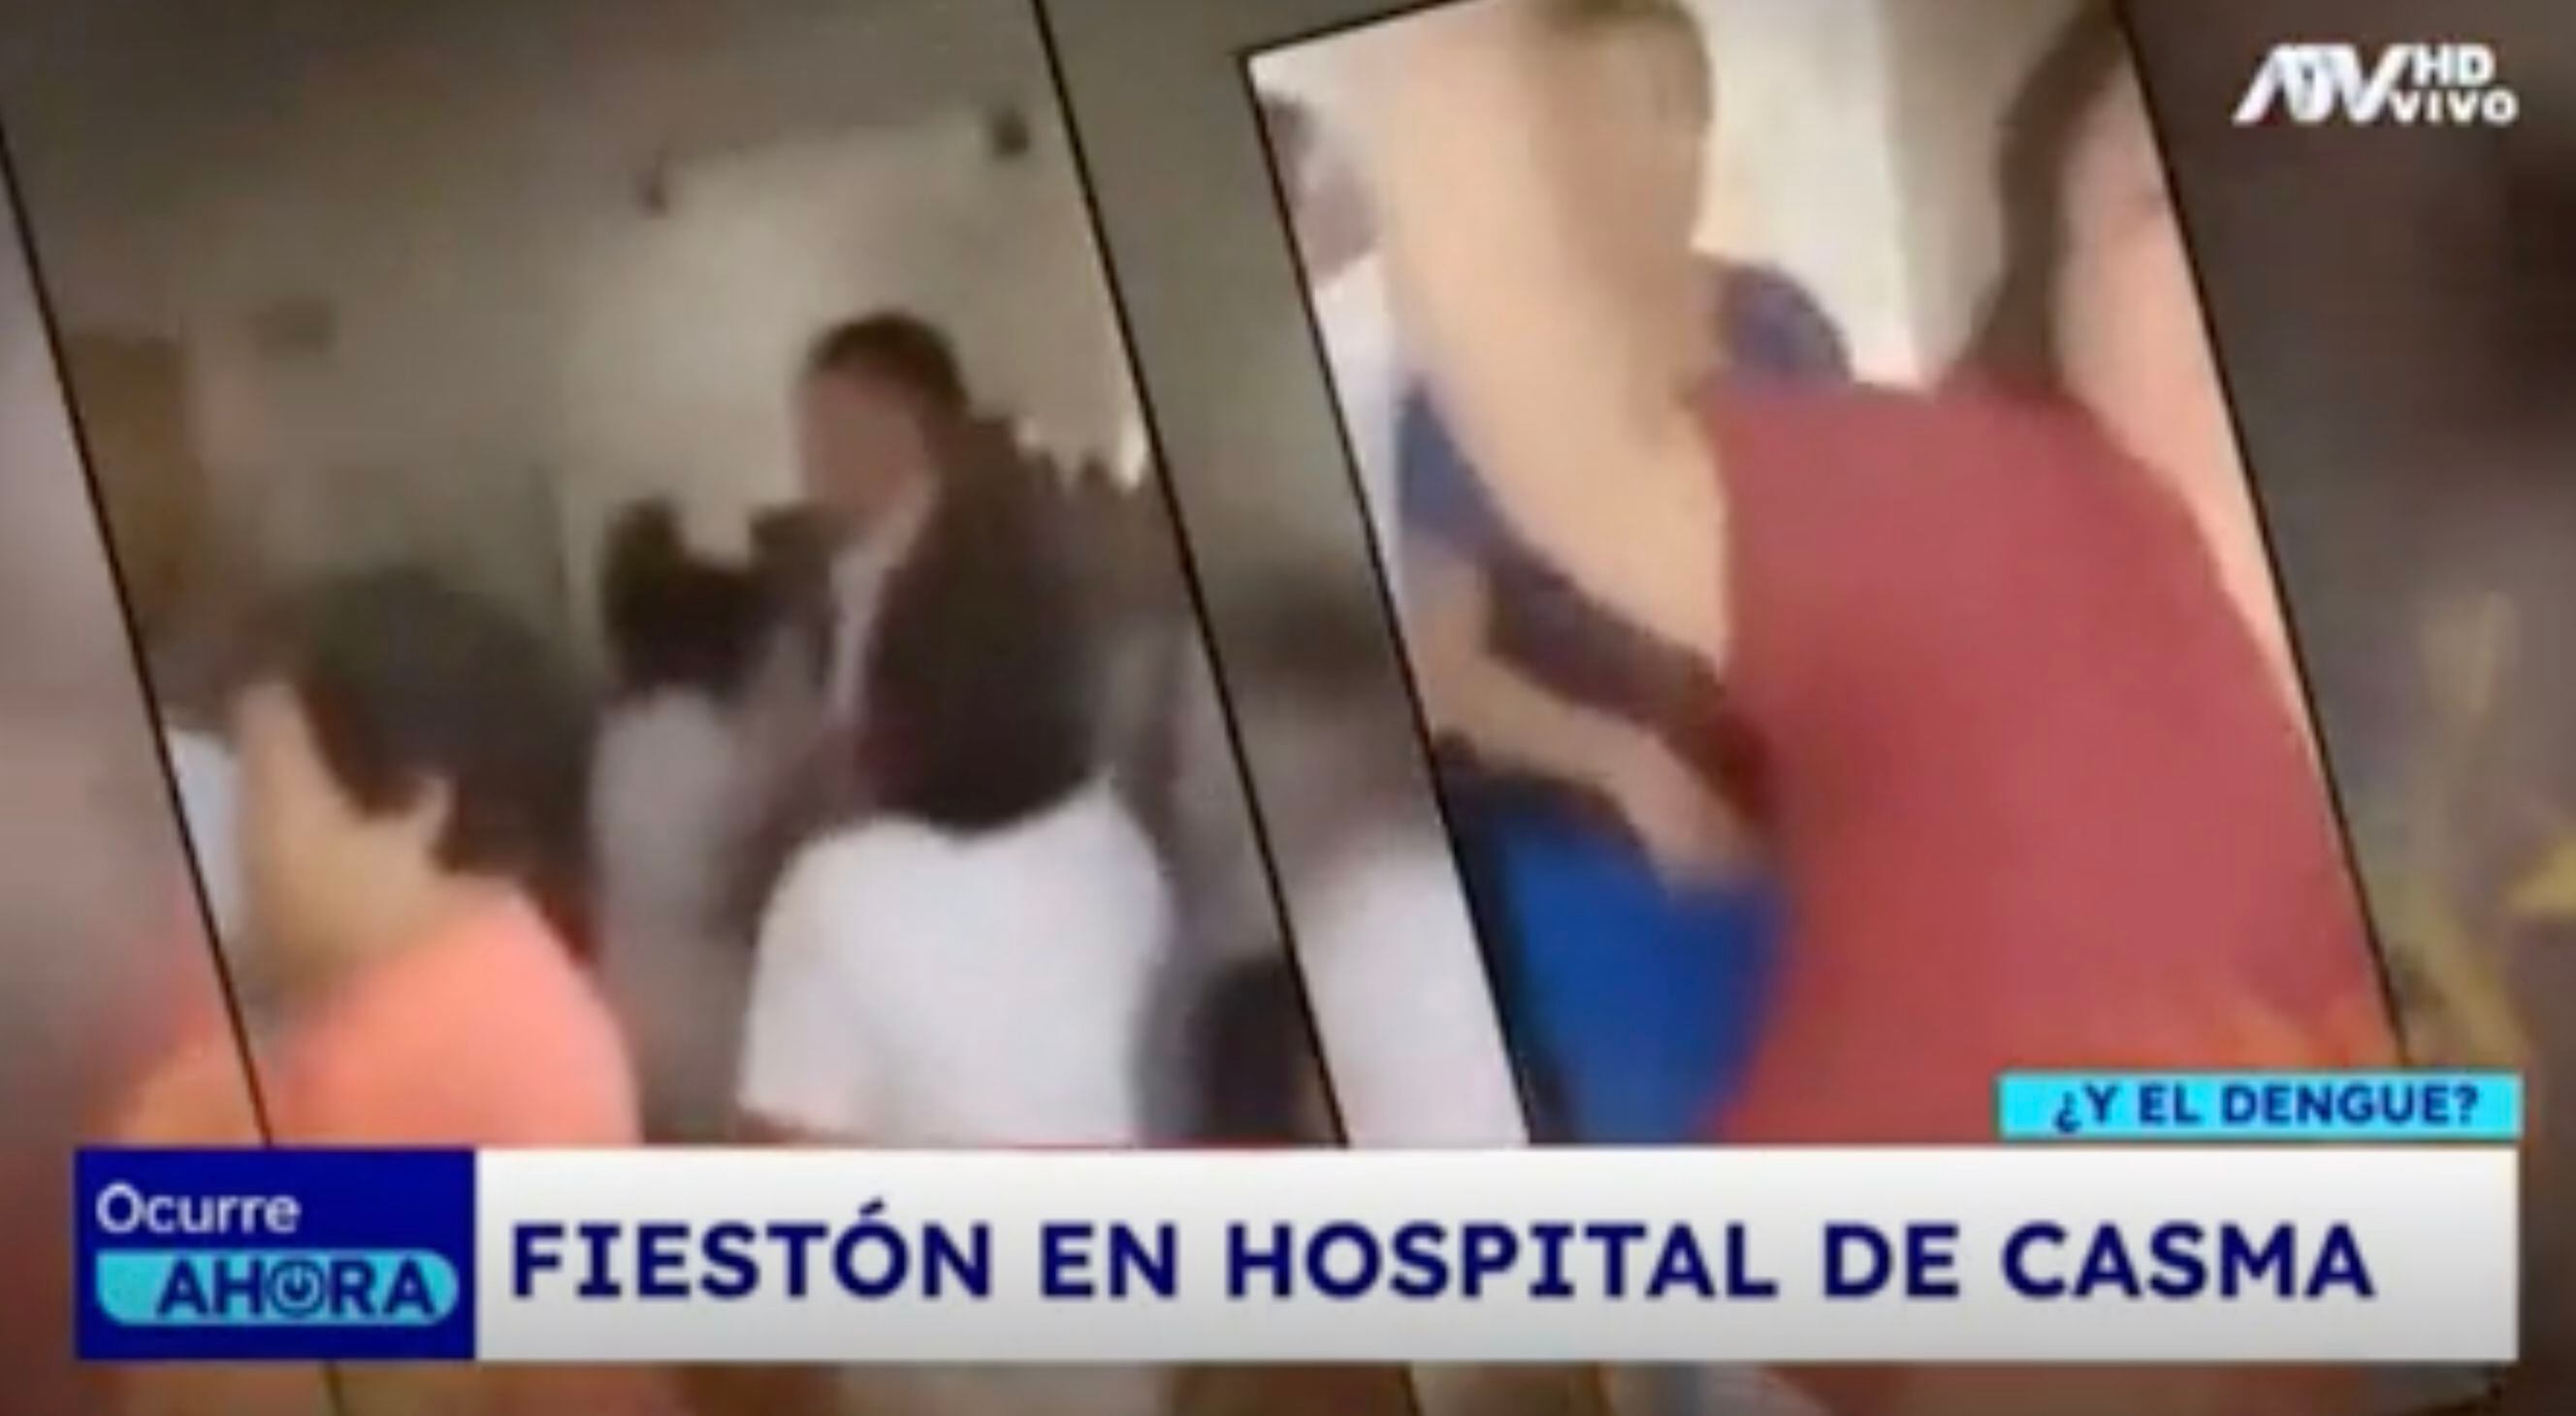 Empleados del Hospital San Ignacio de Casma realizaron fiesta en centro de salud pese a que no tenían permiso.